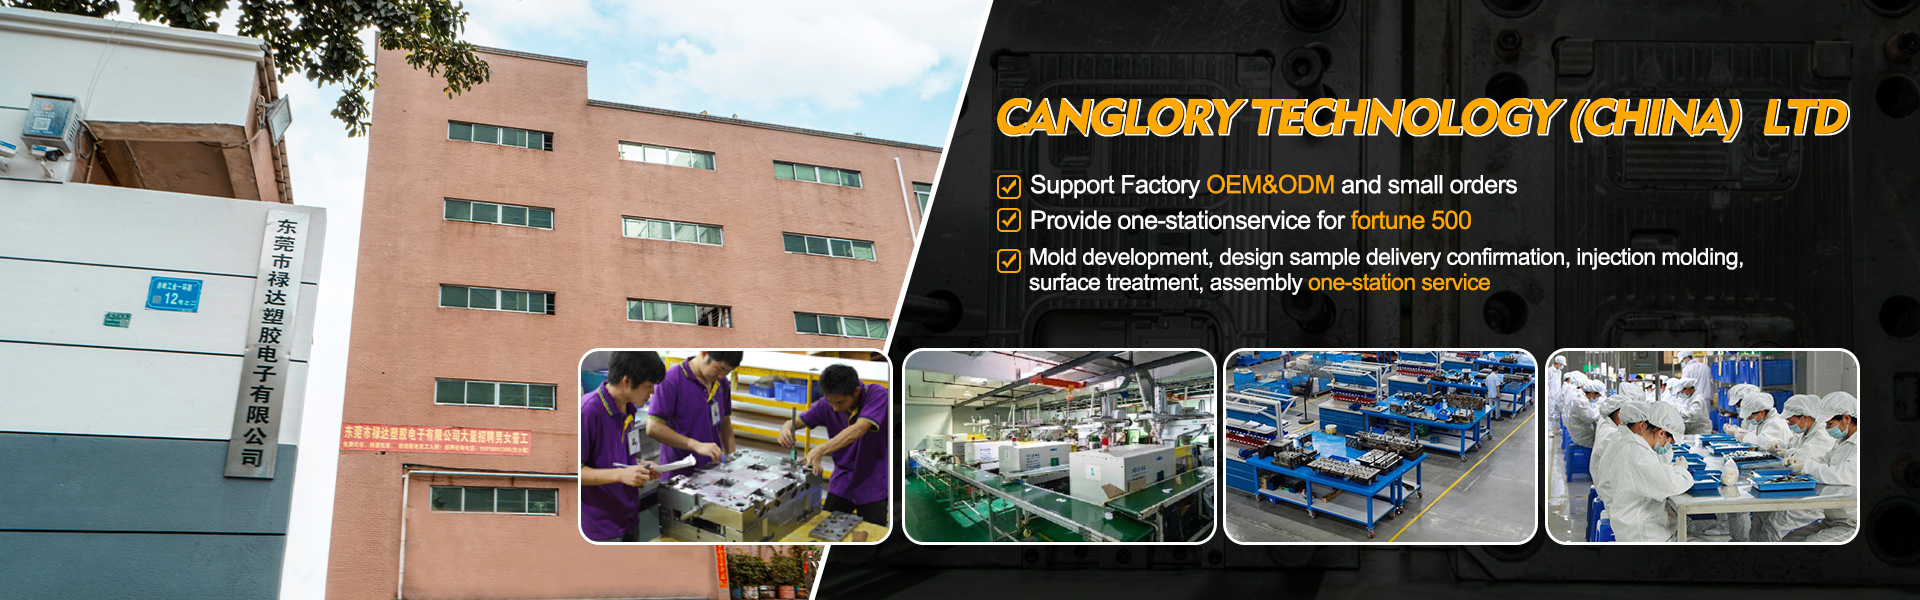 집 - 성형, 주입, 원래 장비 제조업체|Canglory Technology (China) Ltd